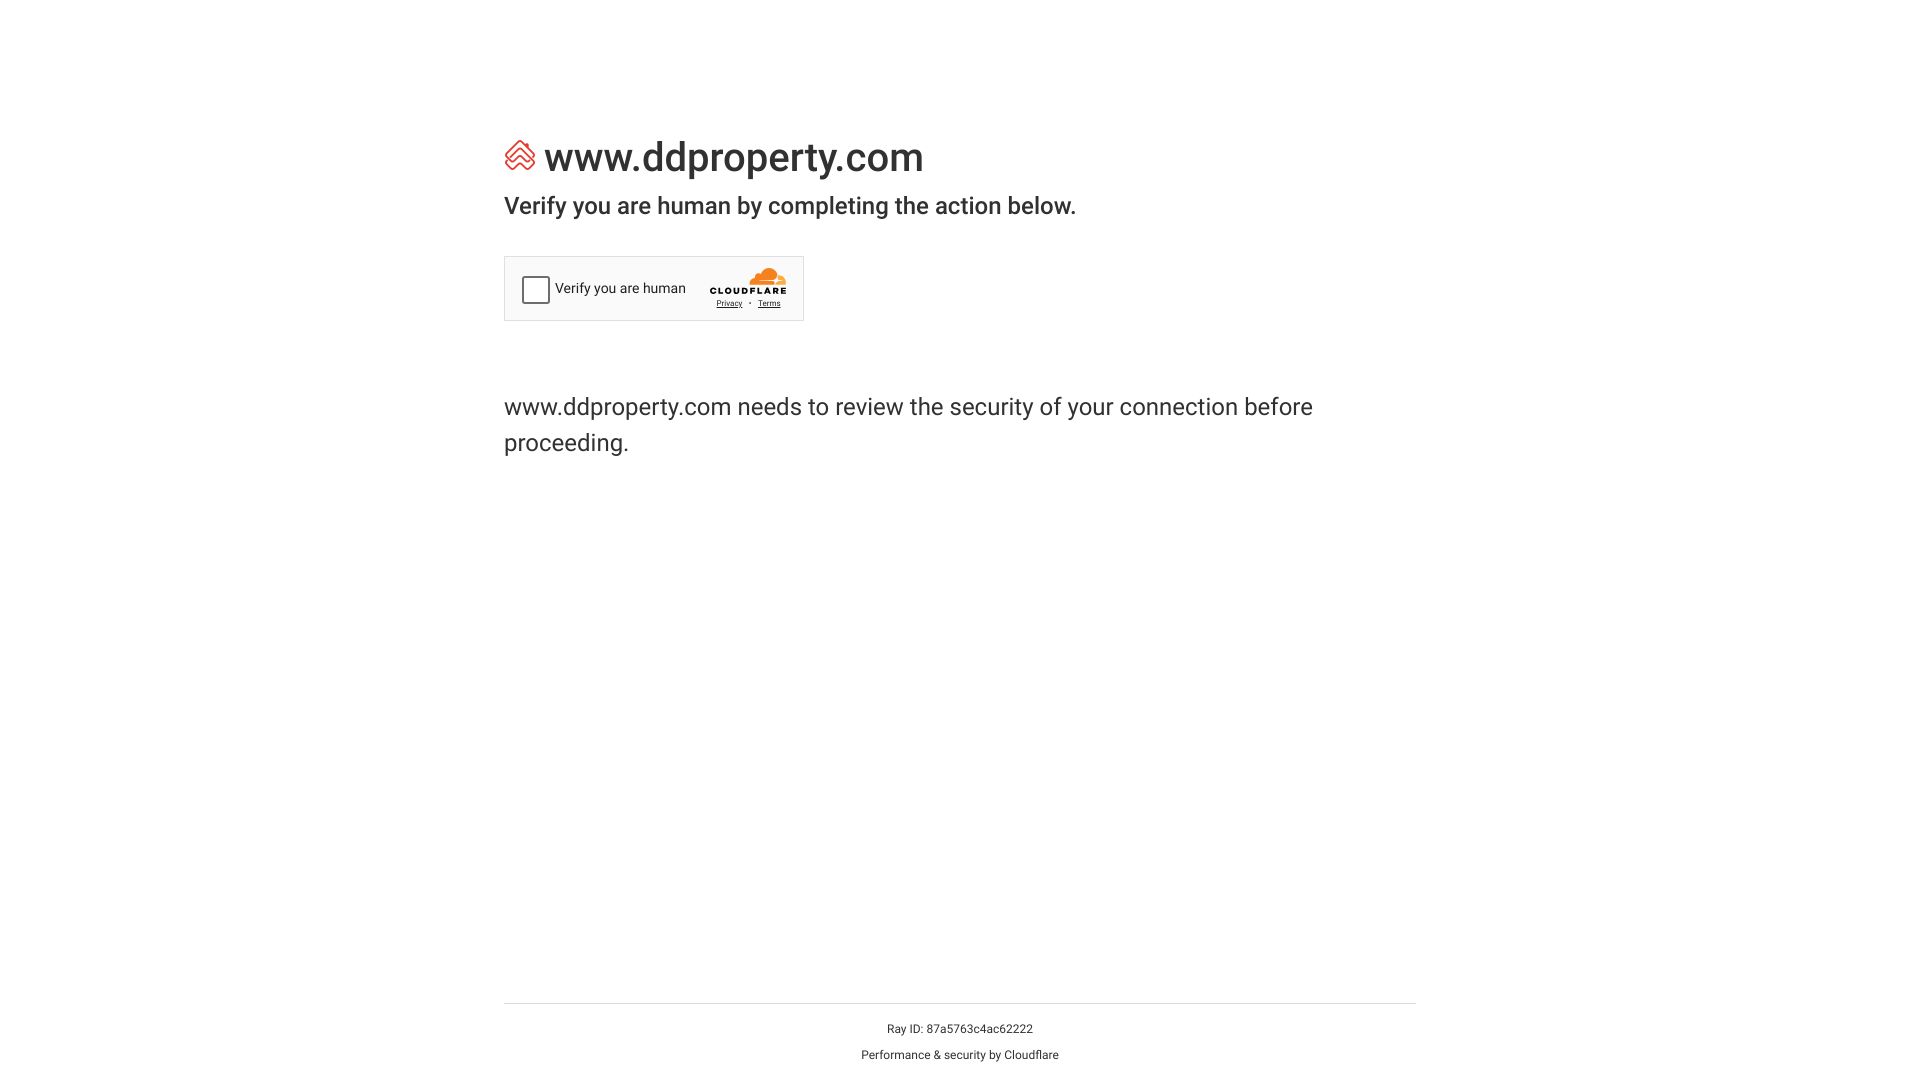 ddproperty.com